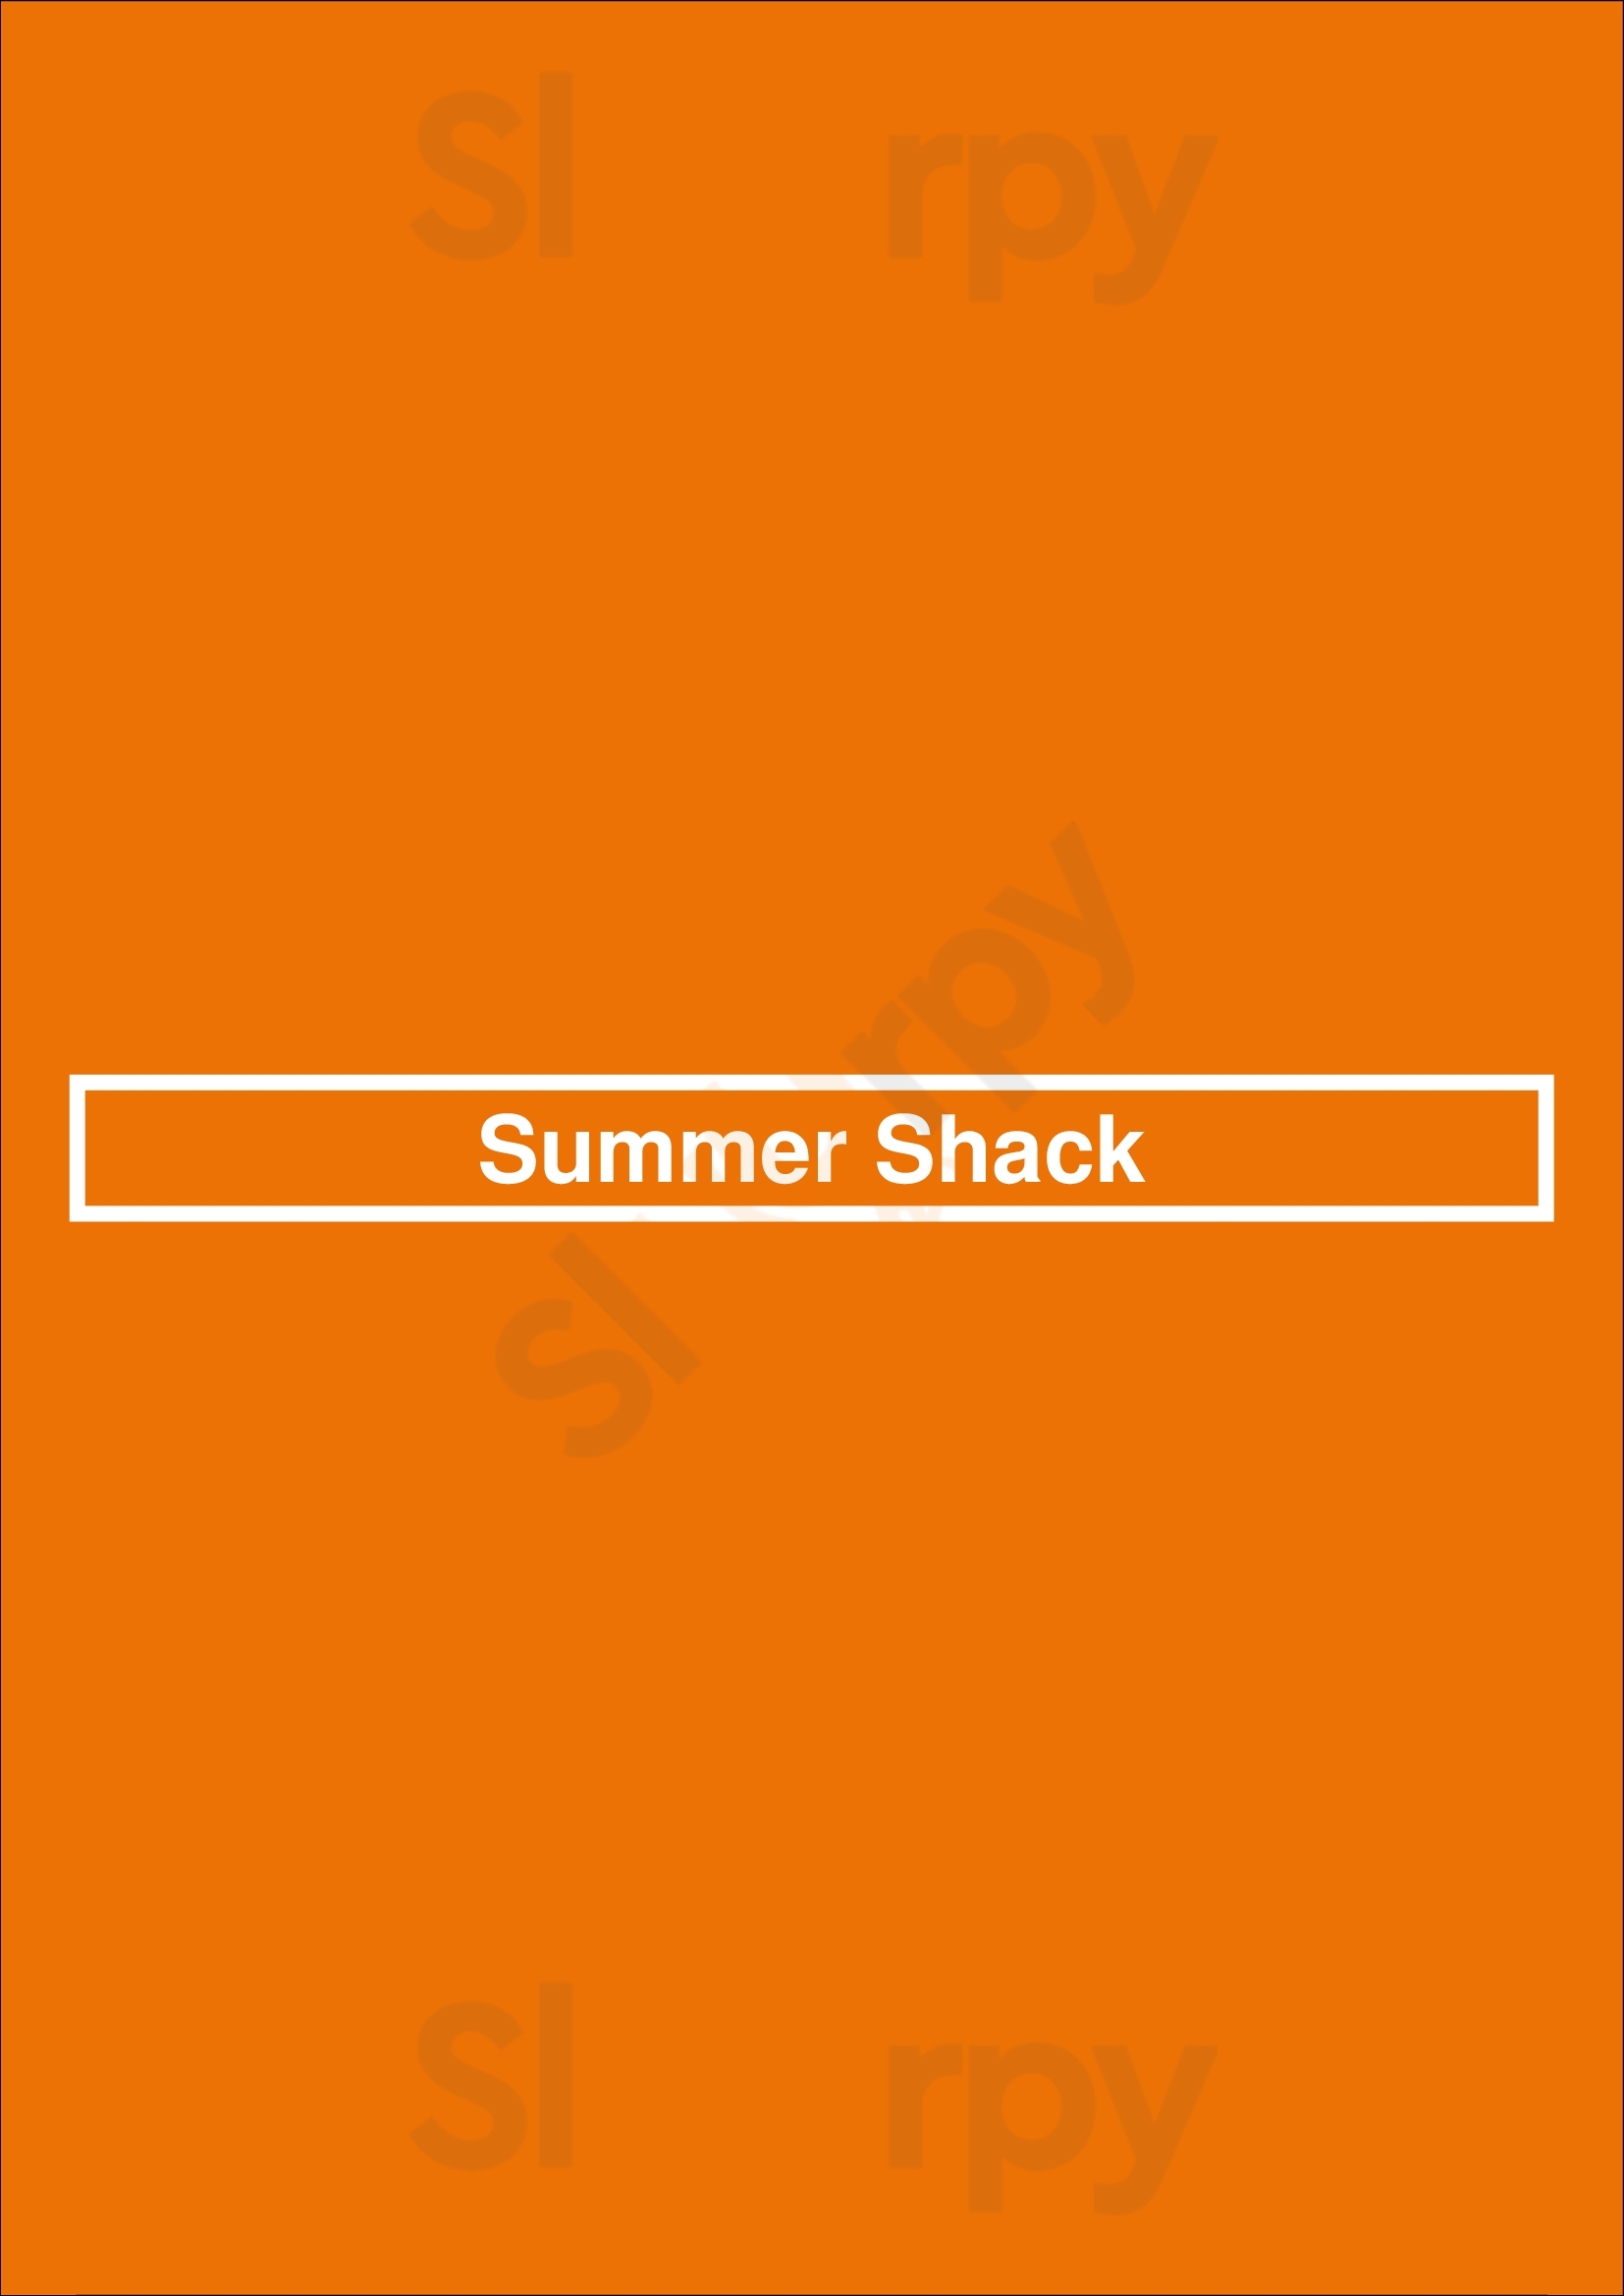 Summer Shack Boston Menu - 1